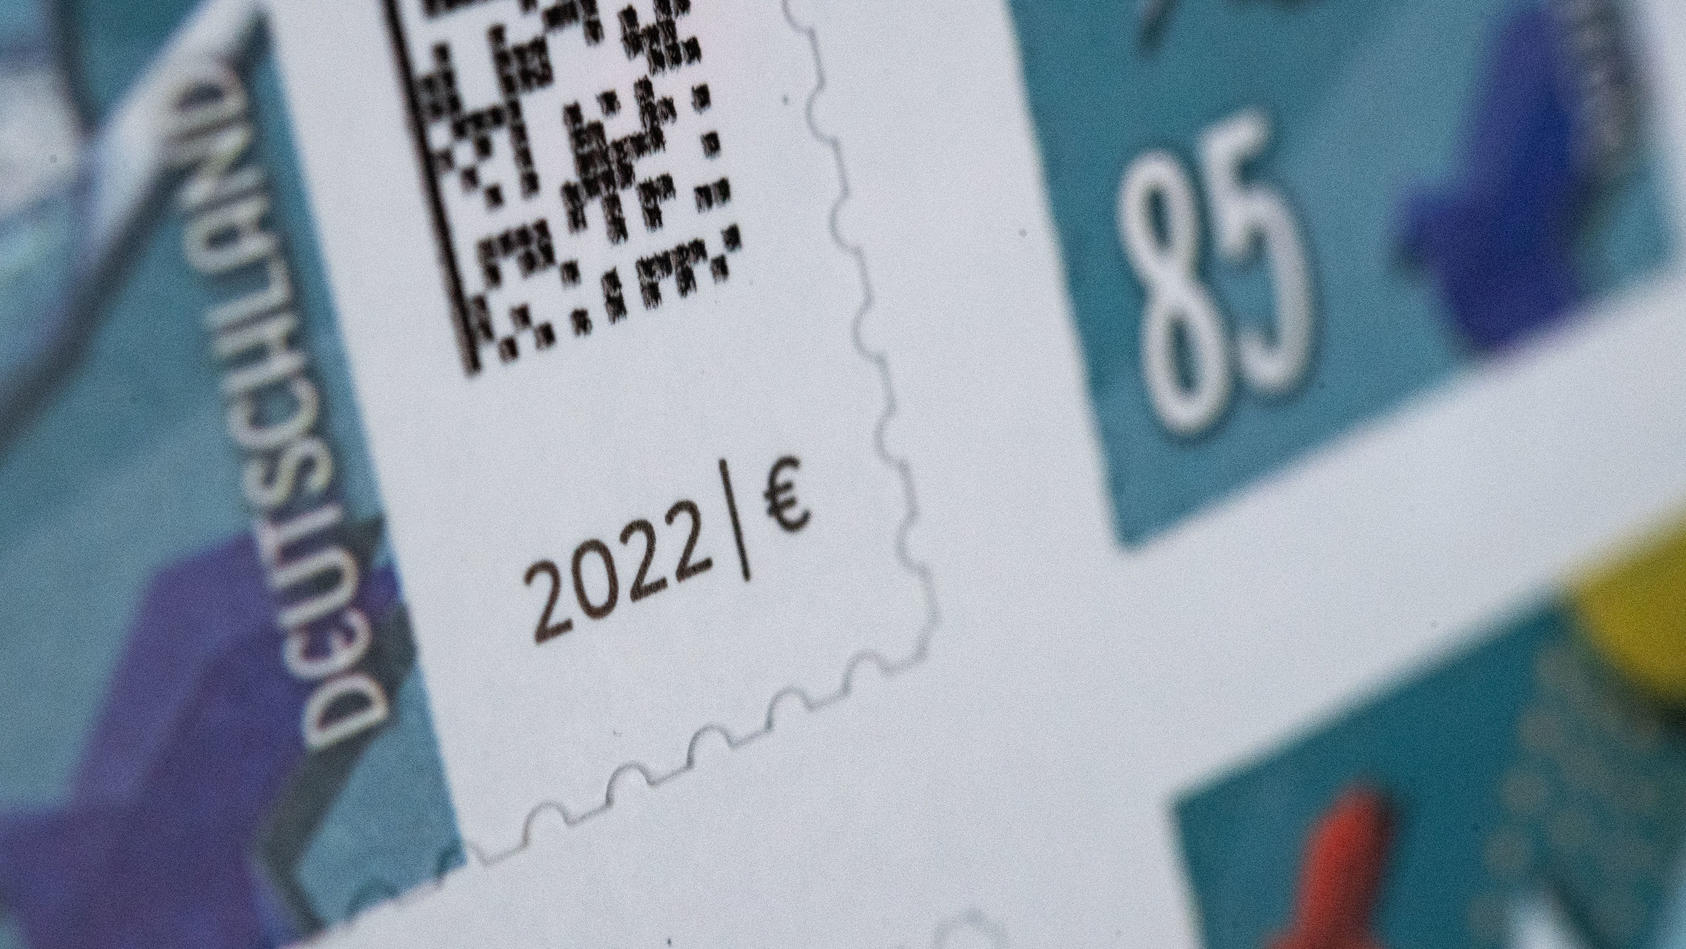 27.12.2021, Baden-Württemberg, Stuttgart: ILLUSTRATION - 85 Cent Briefmarken kleben auf einem Bogen. Zum 1. Januar steigt das Porto von Inlandsbriefen, der Standardbrief kostet zukünftig 85 Cent. Alte Marken bleiben gültig, es muss aber zusätzlich fr